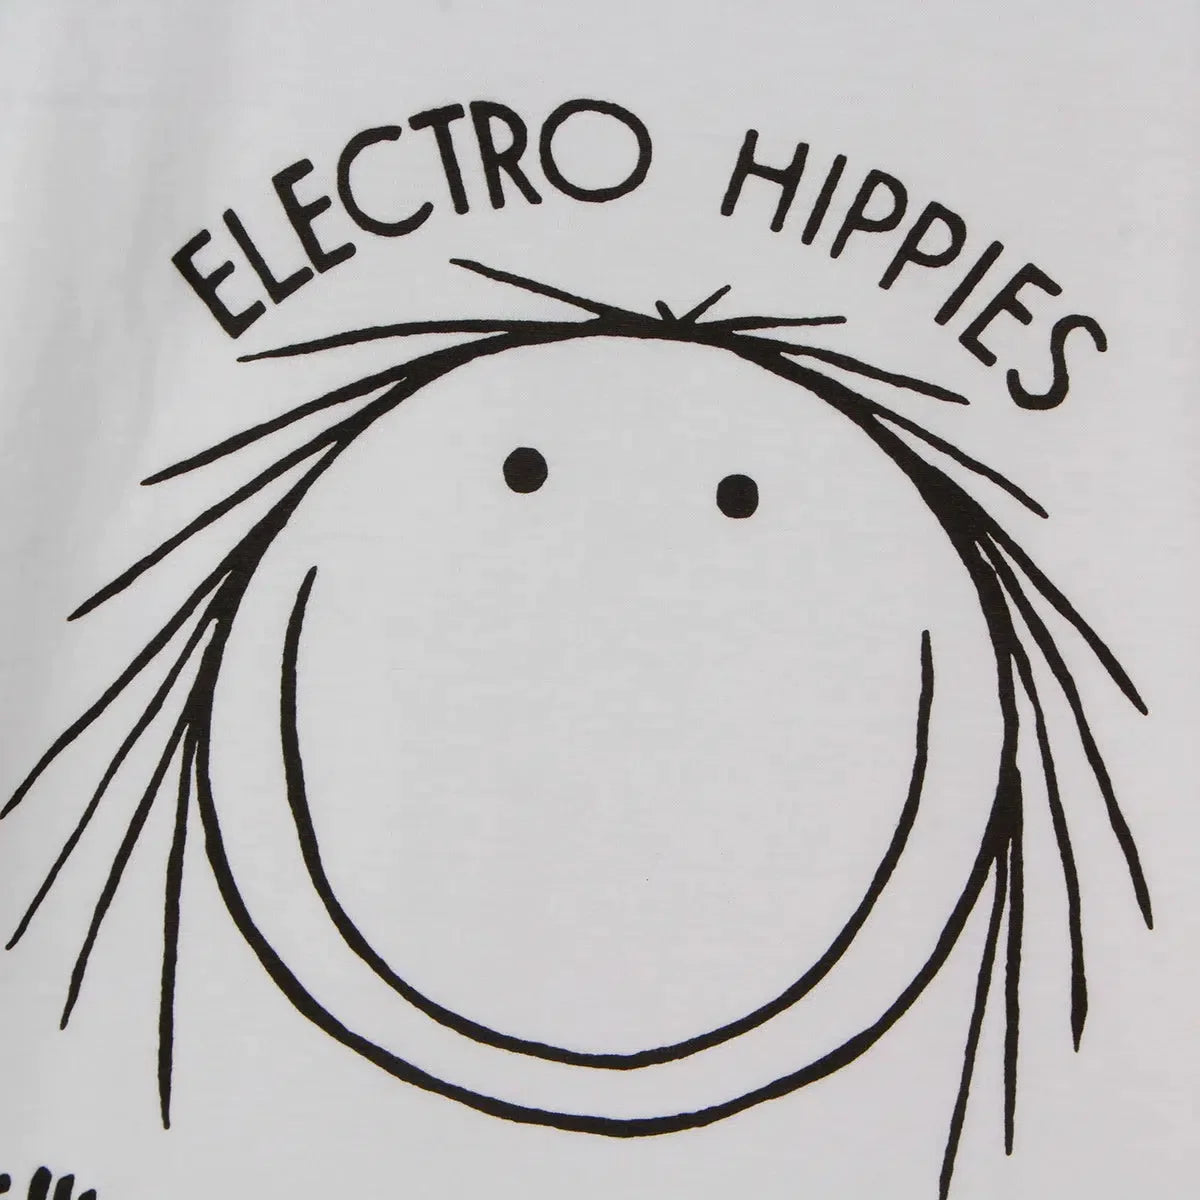 Vintage Electro Hippies Hardcorepunk Tee